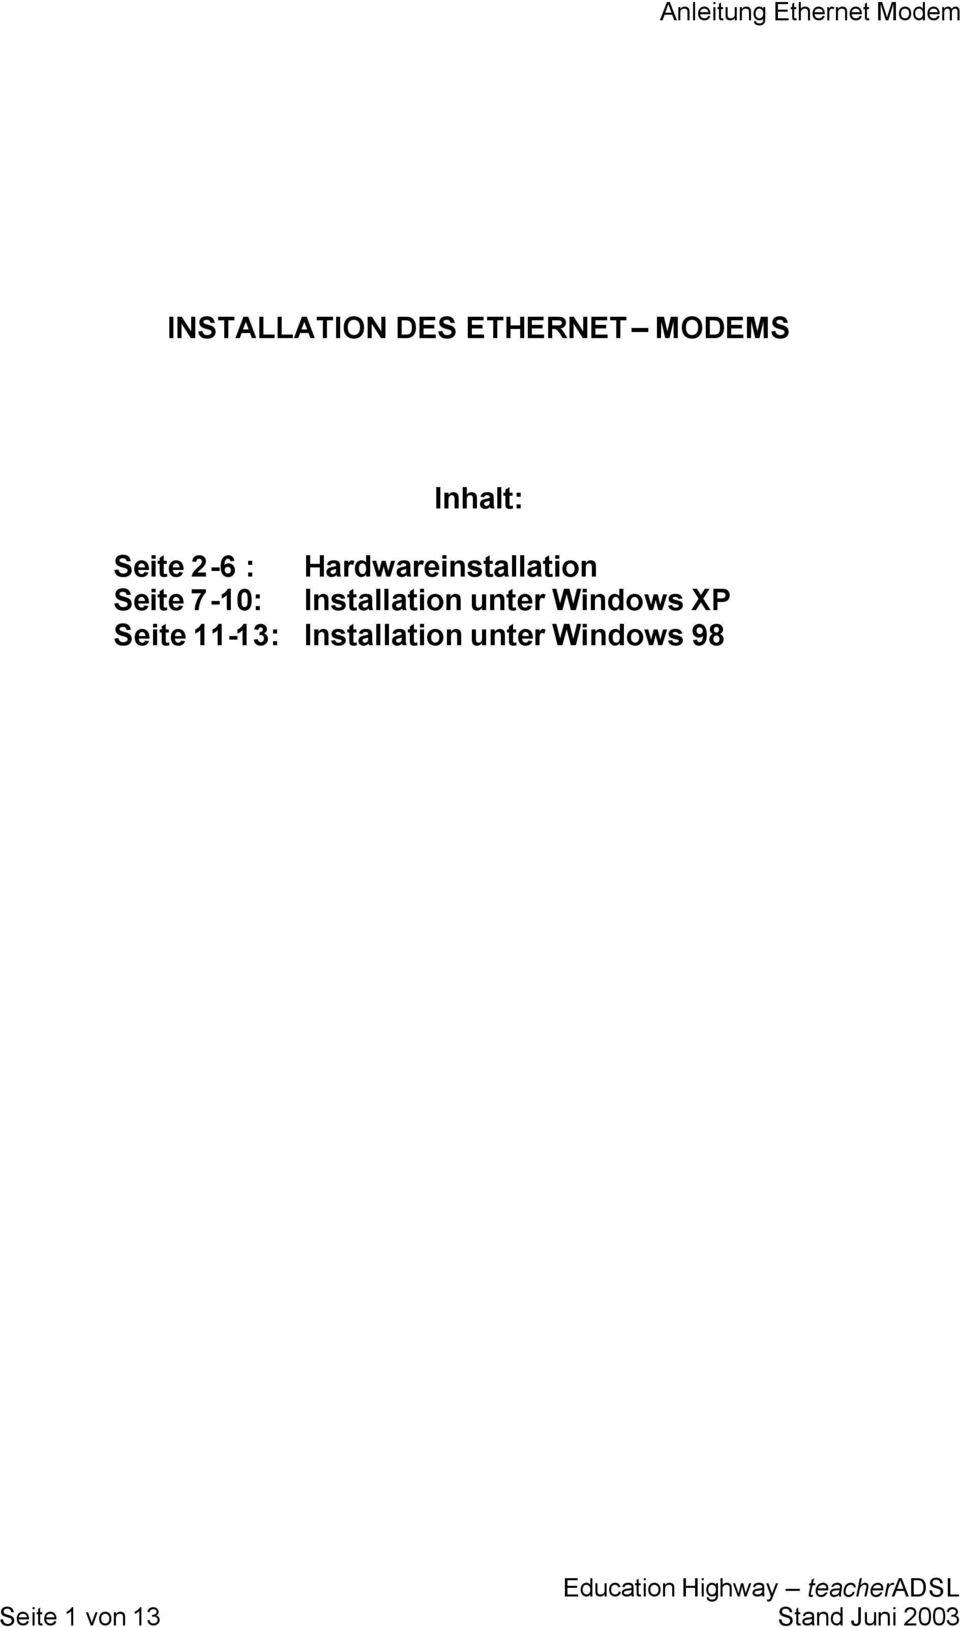 Installation unter Windows XP Seite 11-13: